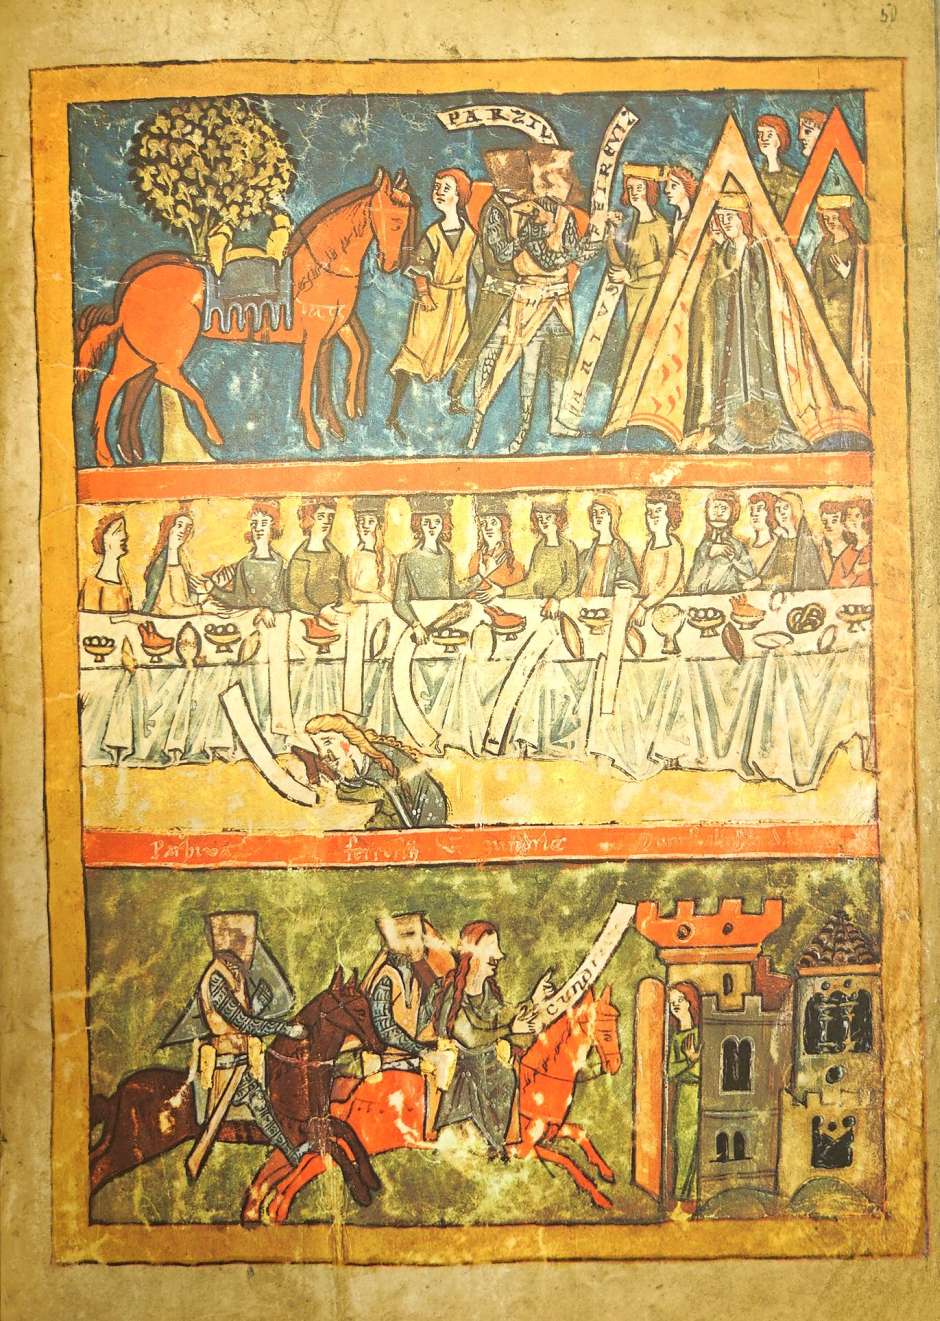 Lot 1448, Auction  115, Wolfram von Eschenbach, Parzival Titurel Tagelieder. 